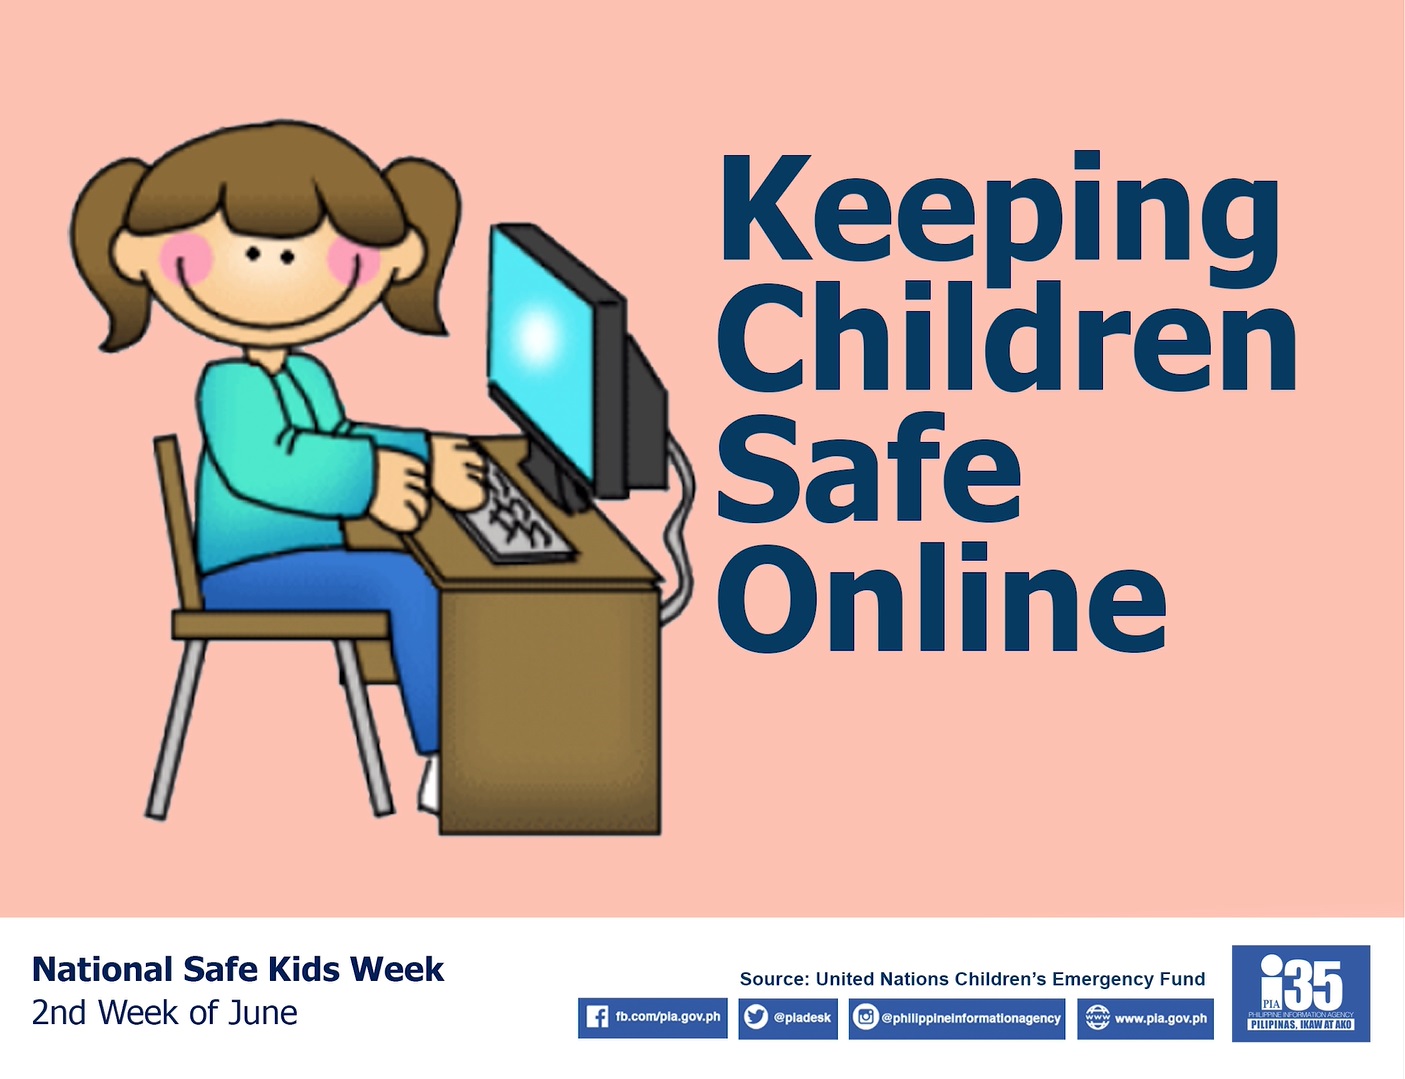 National Safe Kids Week